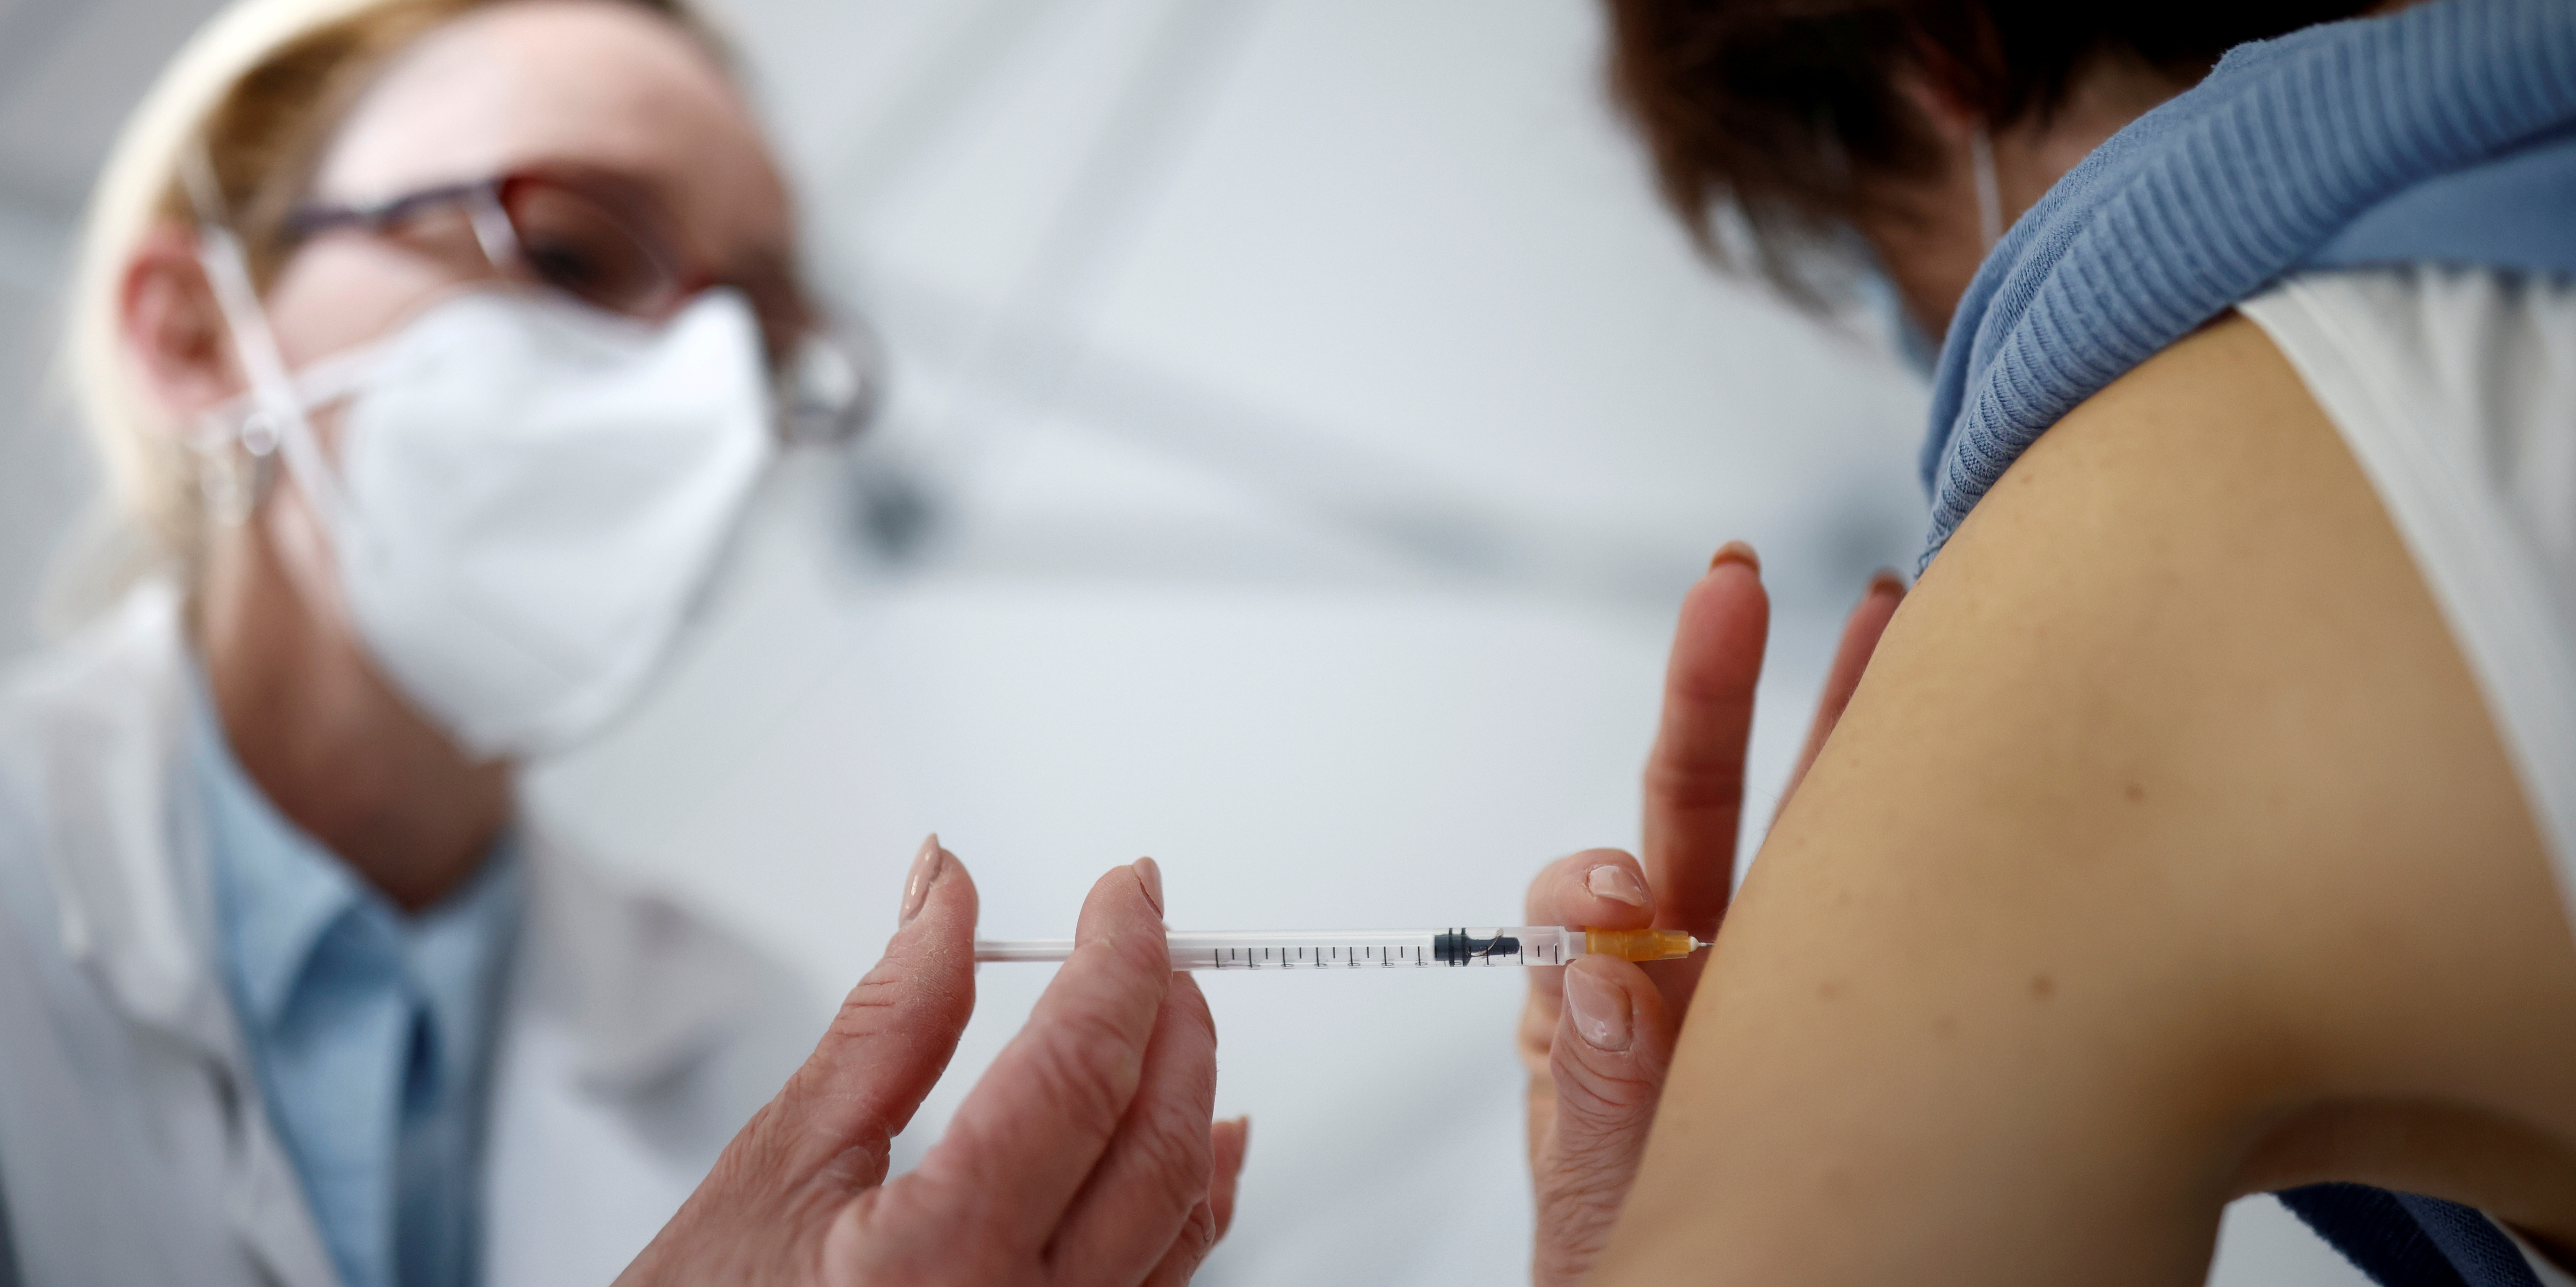 Hausse spectaculaire de l'adhésion au vaccin anti-Covid notamment en France (+19%), en Suède (+25%)